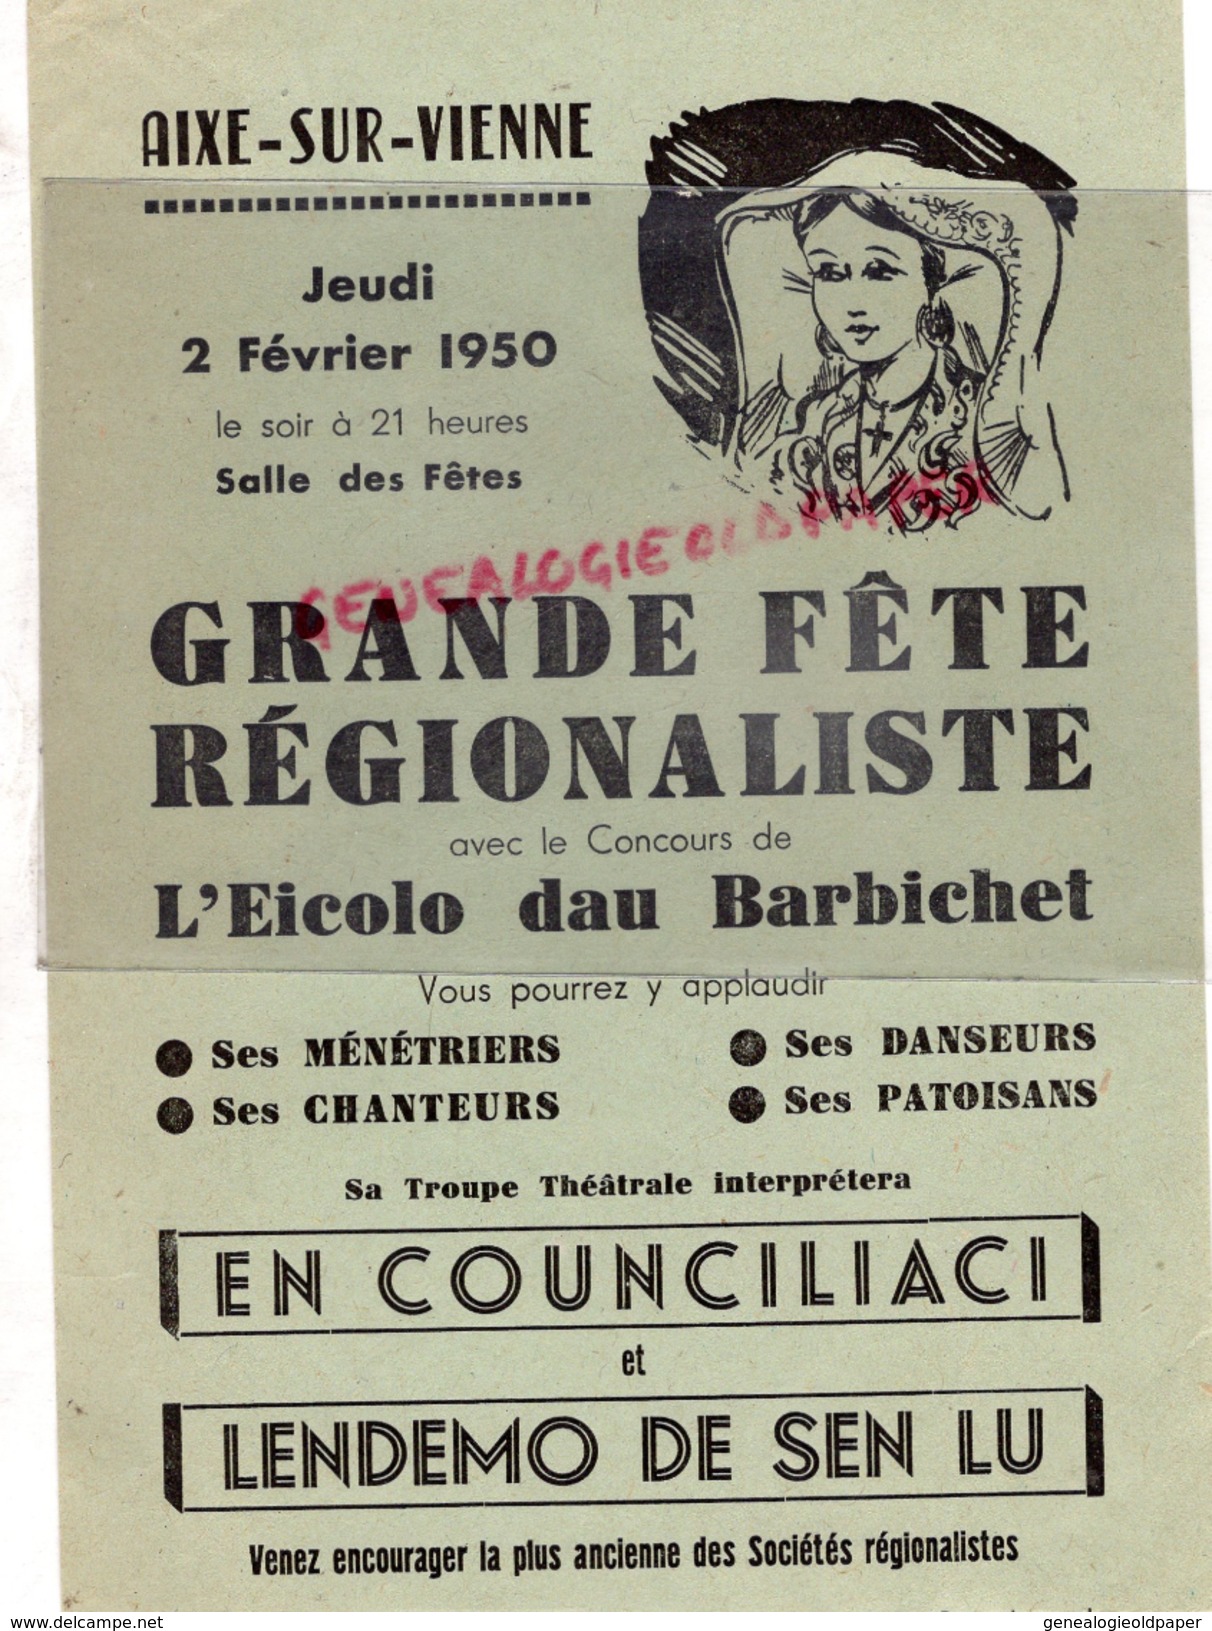 87 - AIXE SUR VIENNE- AFFICHE GRANDE FETE REGIONALISTE-EICOLO DAU BARBICHET-2 FEVRIER 1950- SALLE DES FETES - Afiches